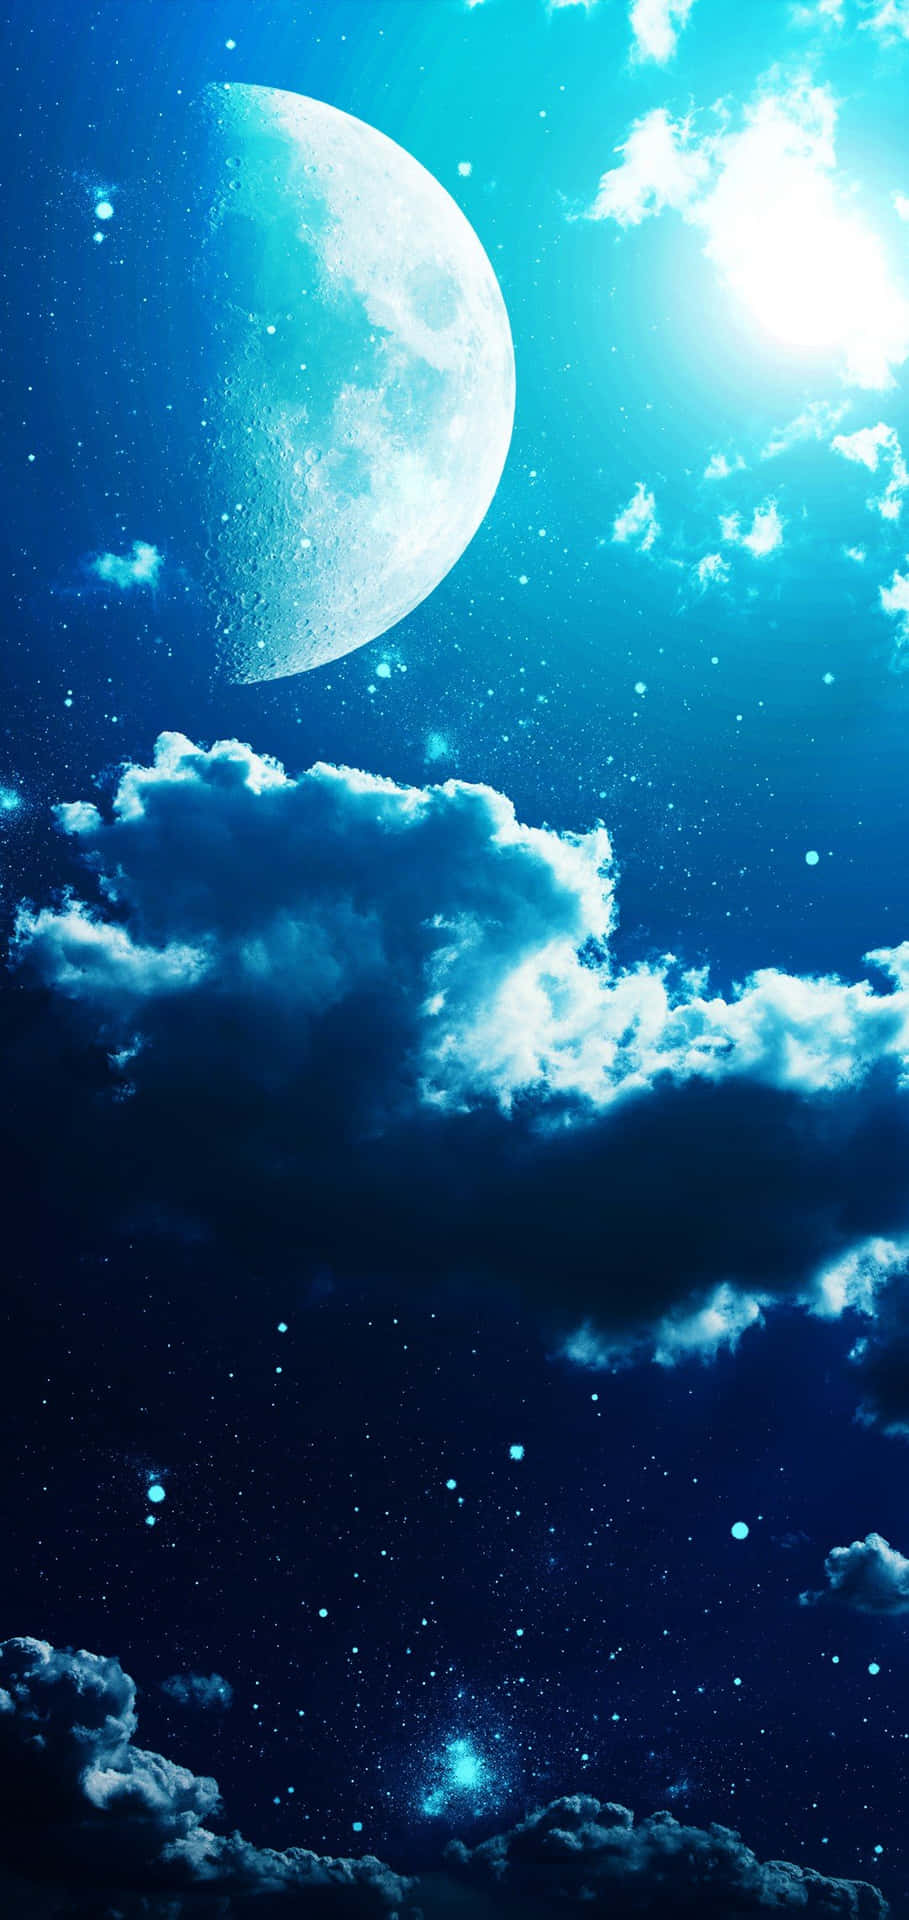 Imagenmágica Del Cielo Nocturno Azul Con Luna